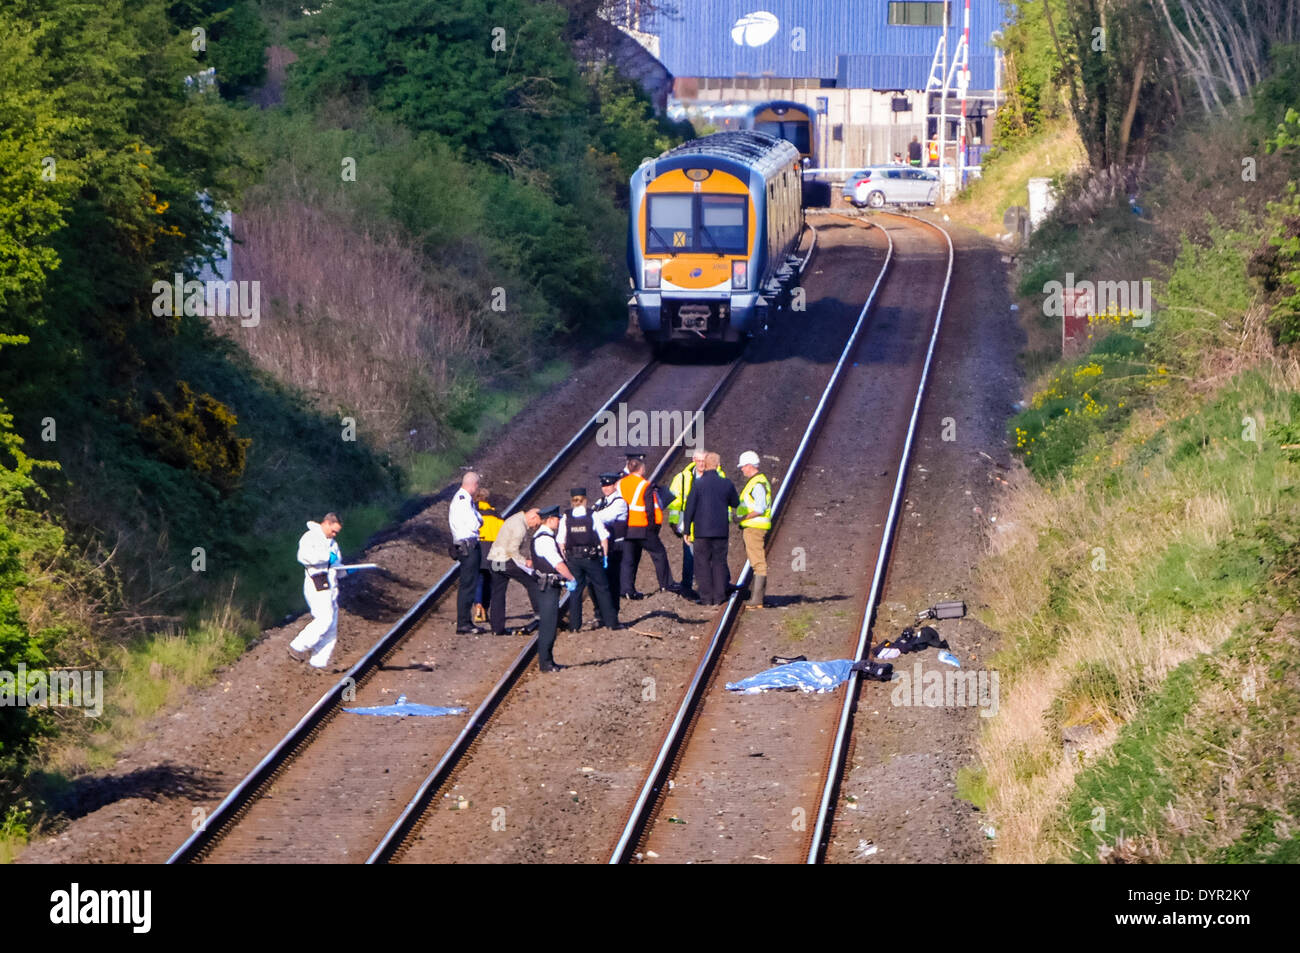 Lurgan, Nordirland. 24. April 2014 - Polizei und Bahnpersonal versammeln sich die Szene auf einem Gleis an der Stelle, wo eine Person getötet wurde, nachdem sie von einem Zug Kredit getroffen worden waren: Stephen Barnes/Alamy Live News Stockfoto